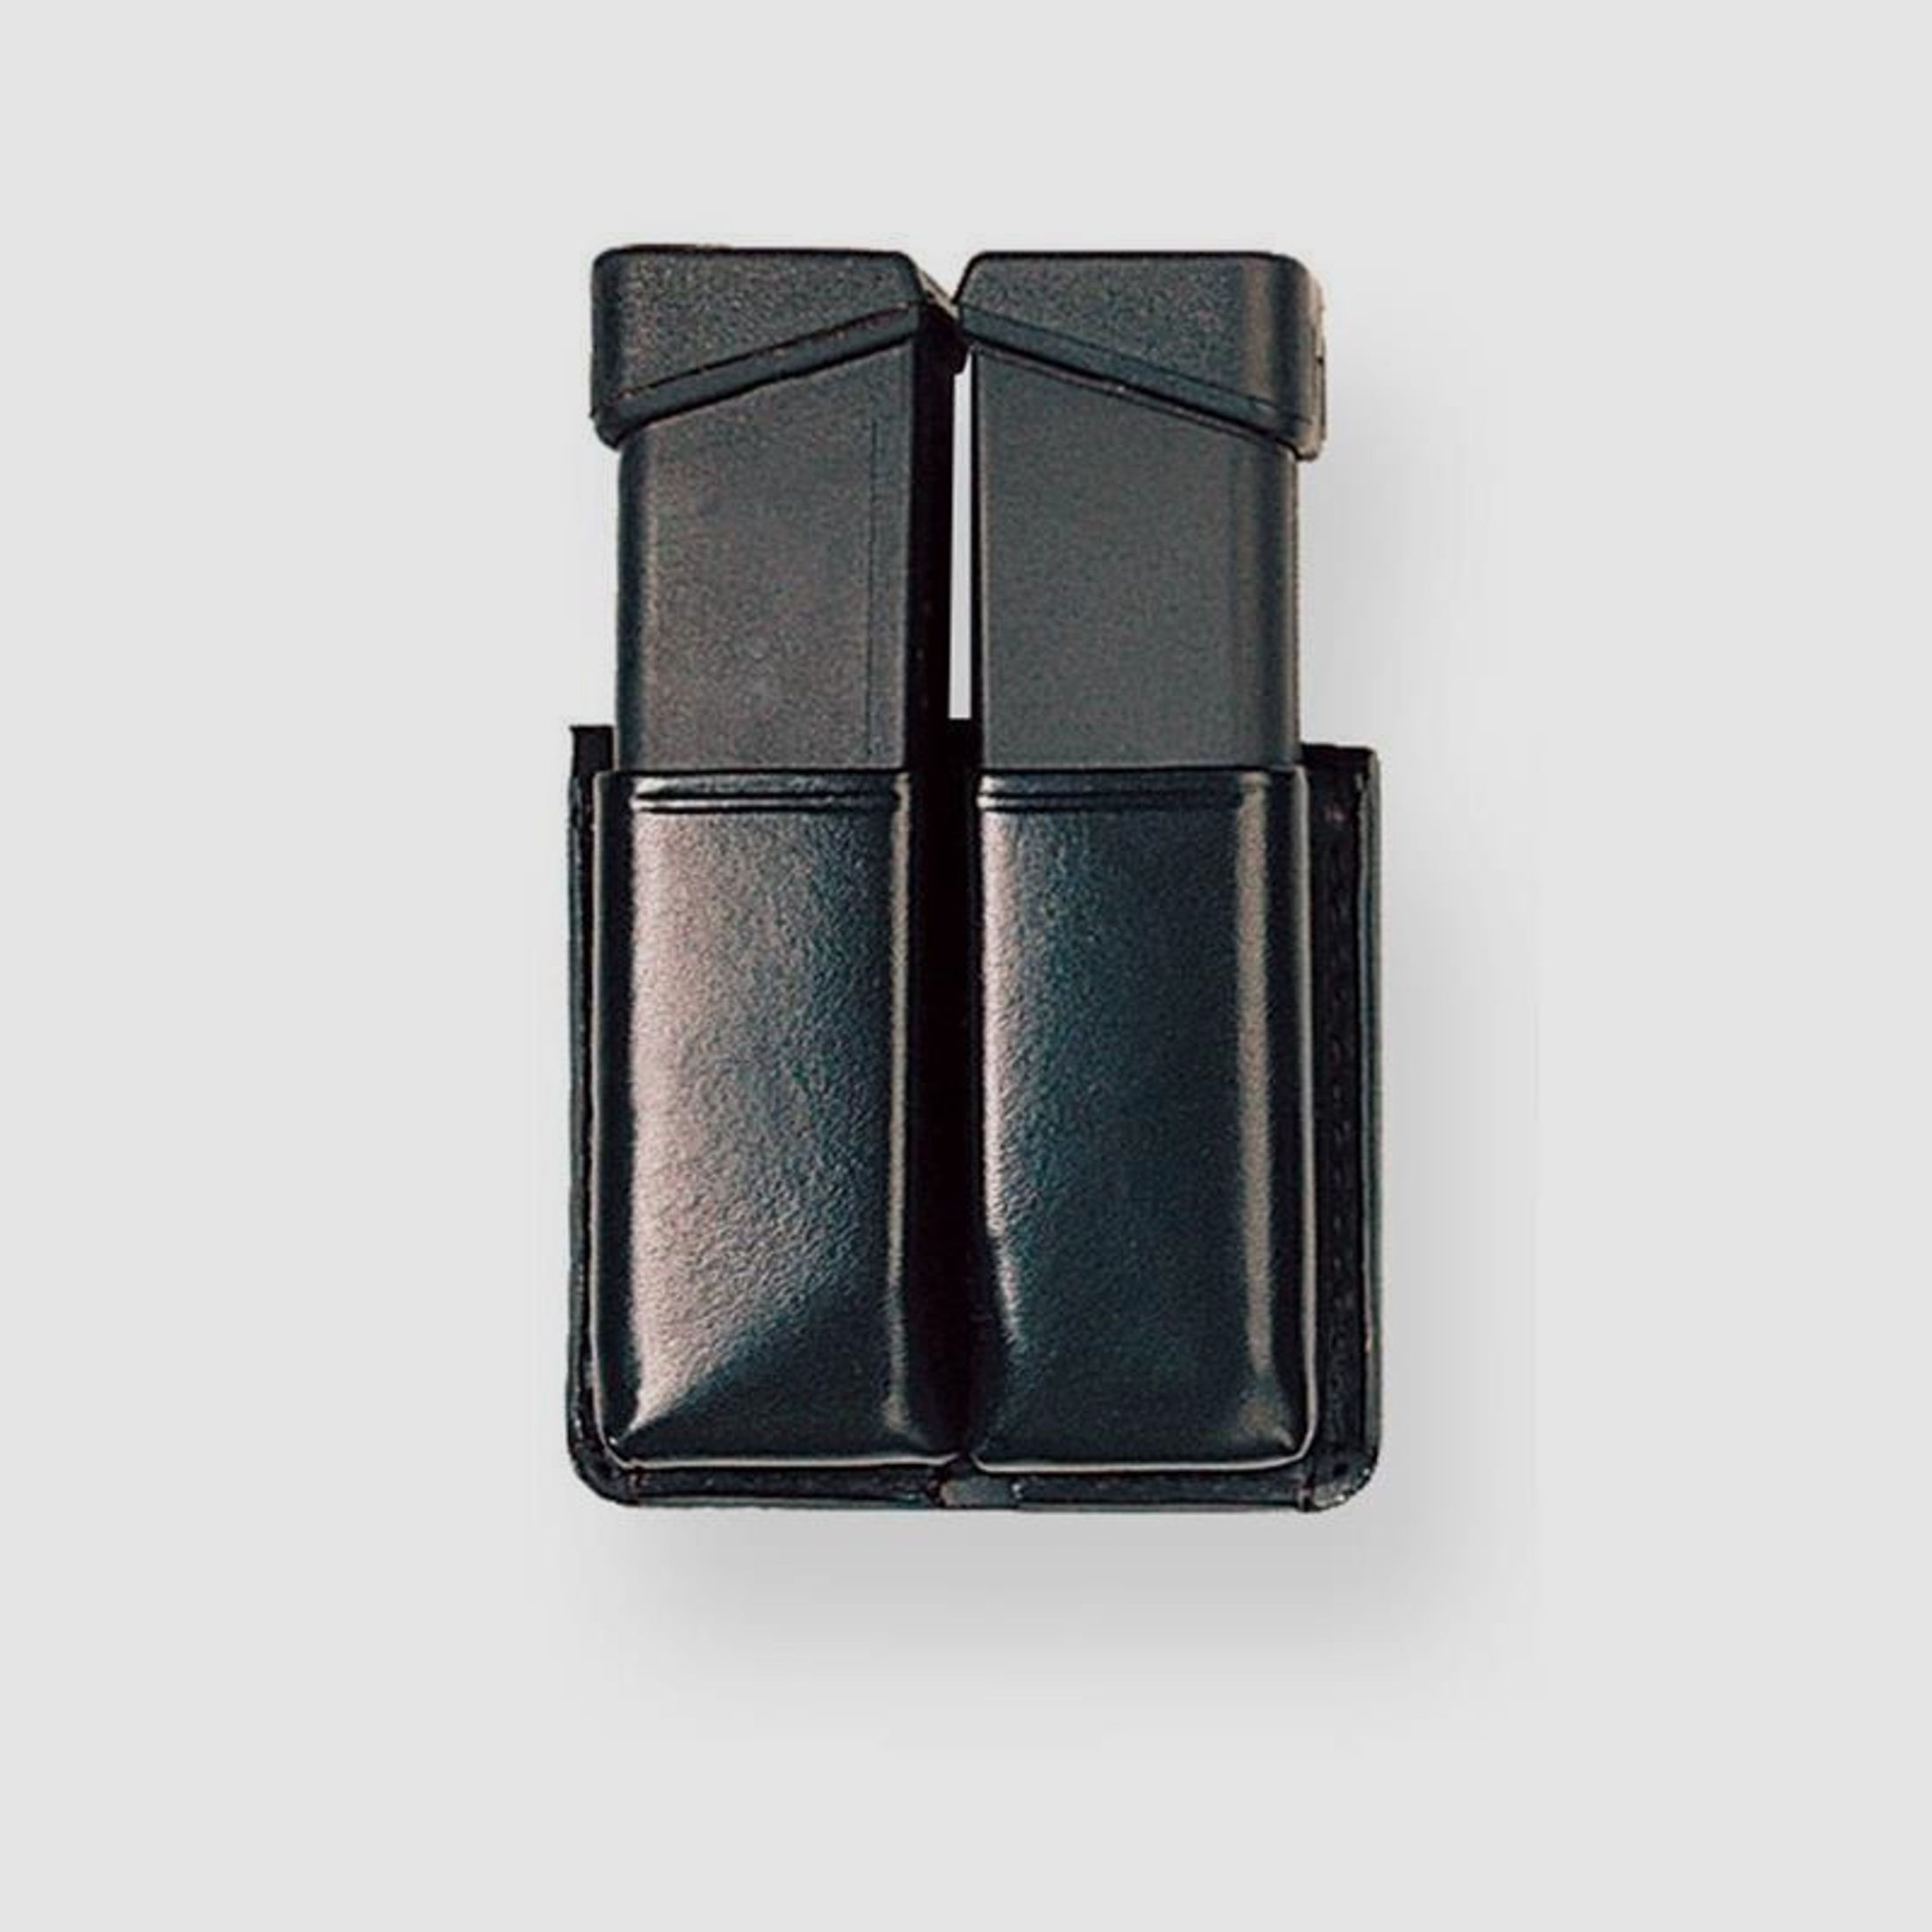 Magazinhalter TWIN Box 9 x 19 zweireihig SIG 226 / CZ M75 ( 21 x 32 mm ) Schwarz